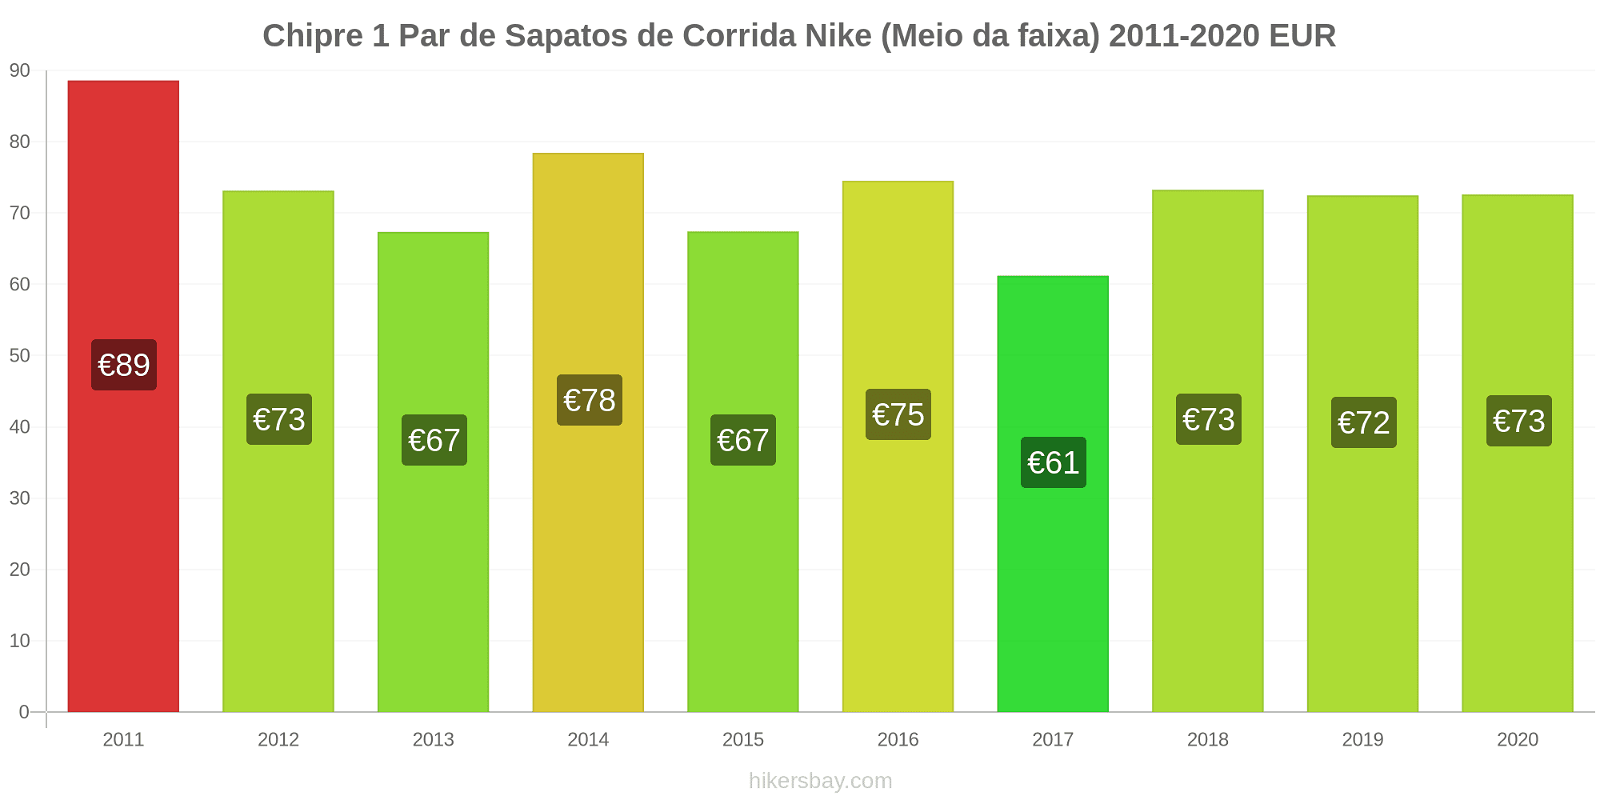 Chipre variação de preço 1 par de tênis Nike (mid-range) hikersbay.com